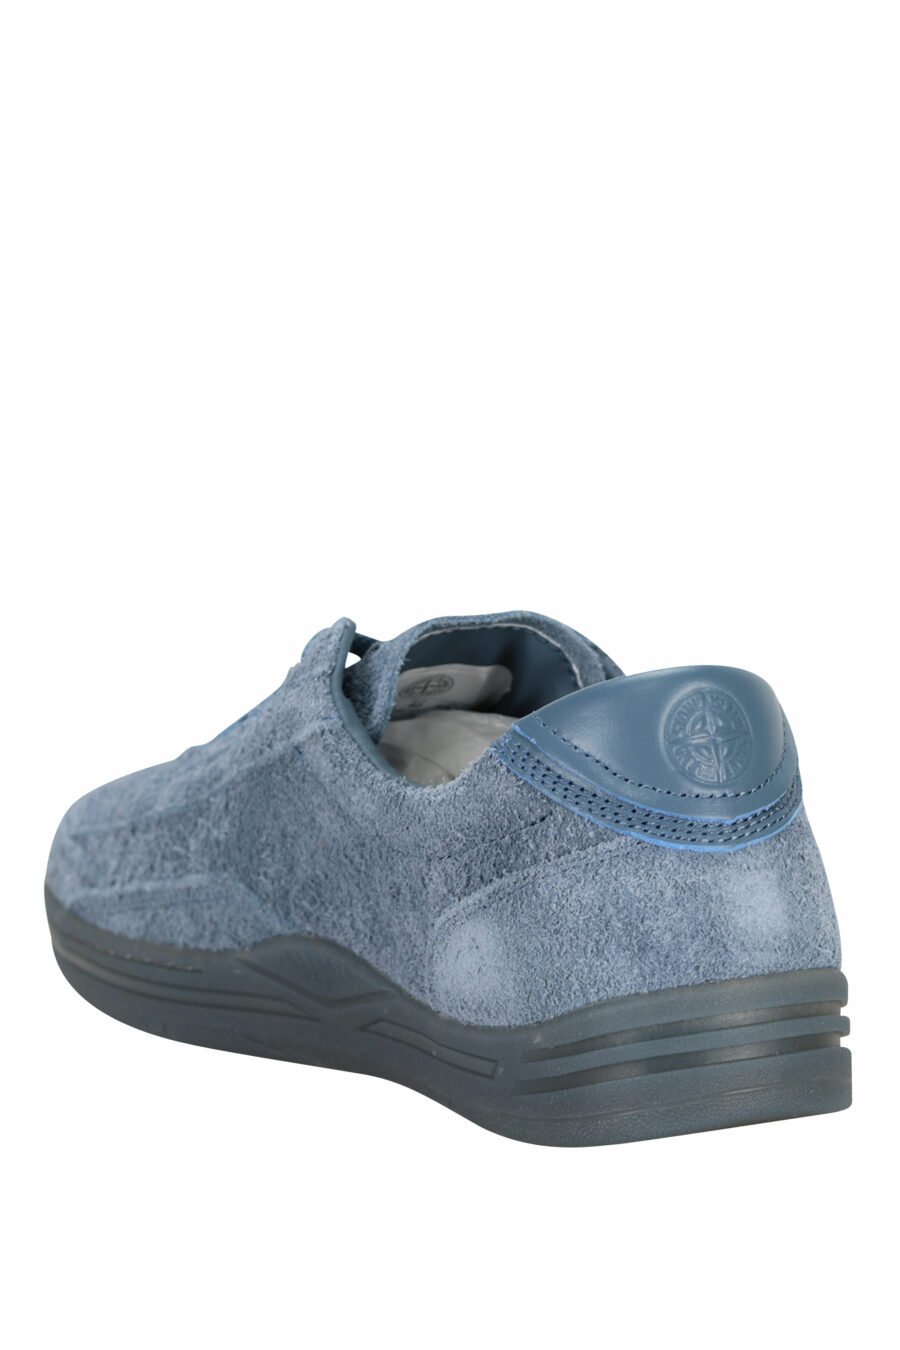 Zapatillas azul oscuro con minilogo y suela gris - 8052572937866 3